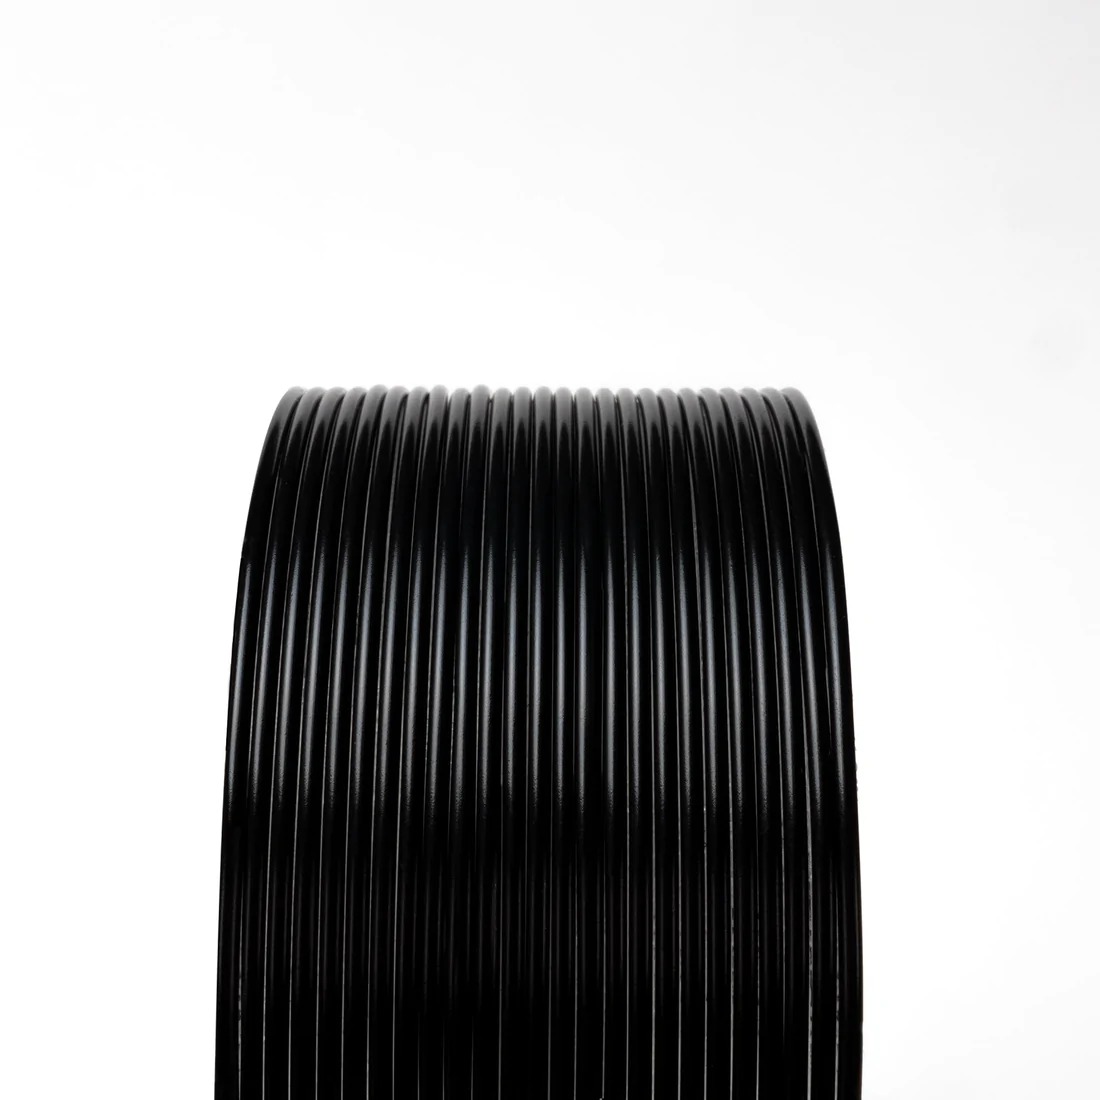 Black Opaque (Premium) HTPLA V3 Black 1Kg 2.85mm 3D printing Filament